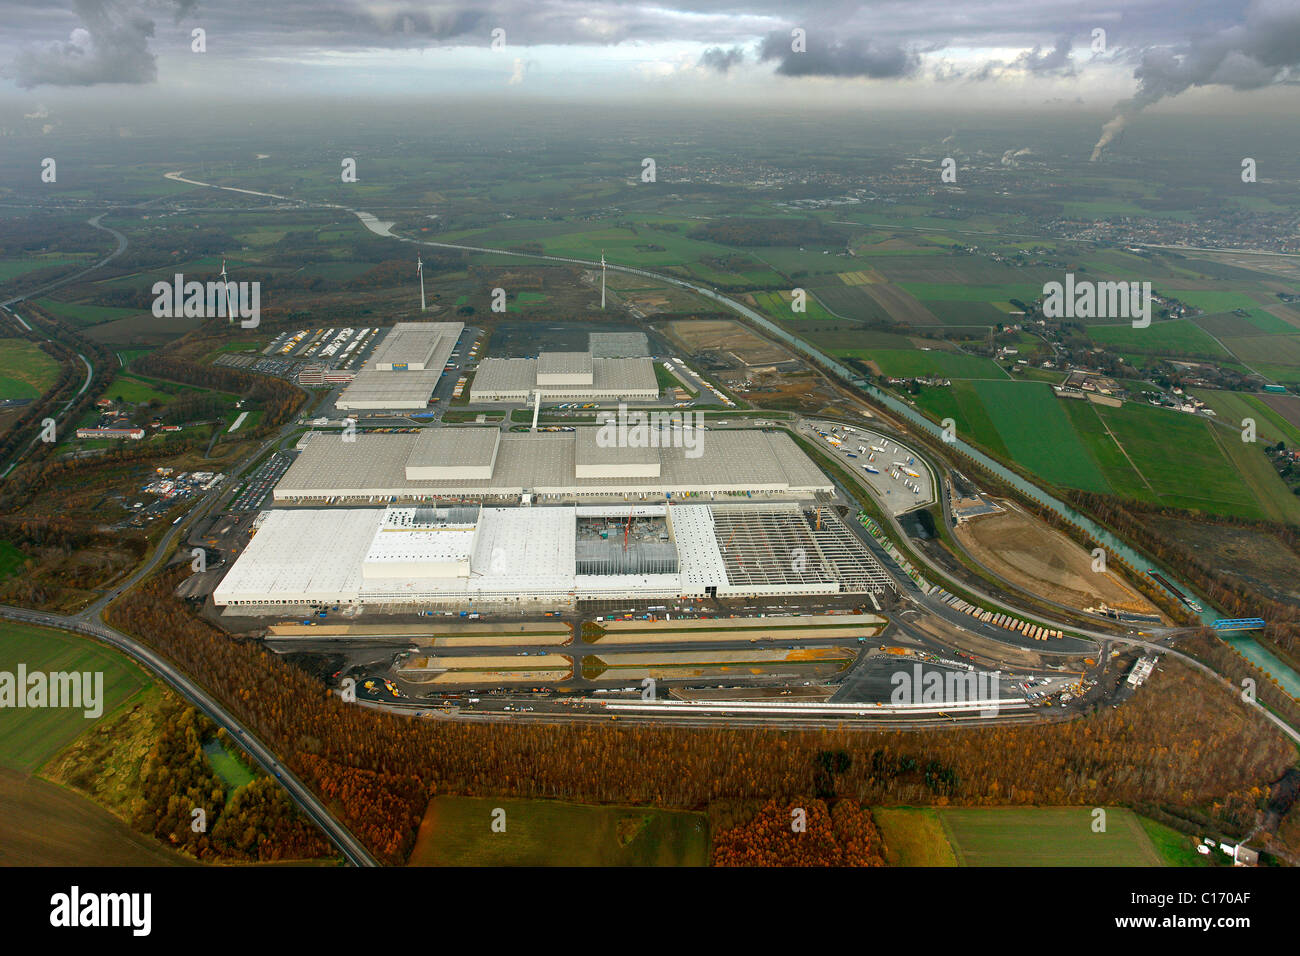 Luftbild, Logistikzentrum von IKEA Europa, Ellinghausen, Dortmund, Ruhrgebiet, Nordrhein-Westfalen, Deutschland, Europa Stockfoto